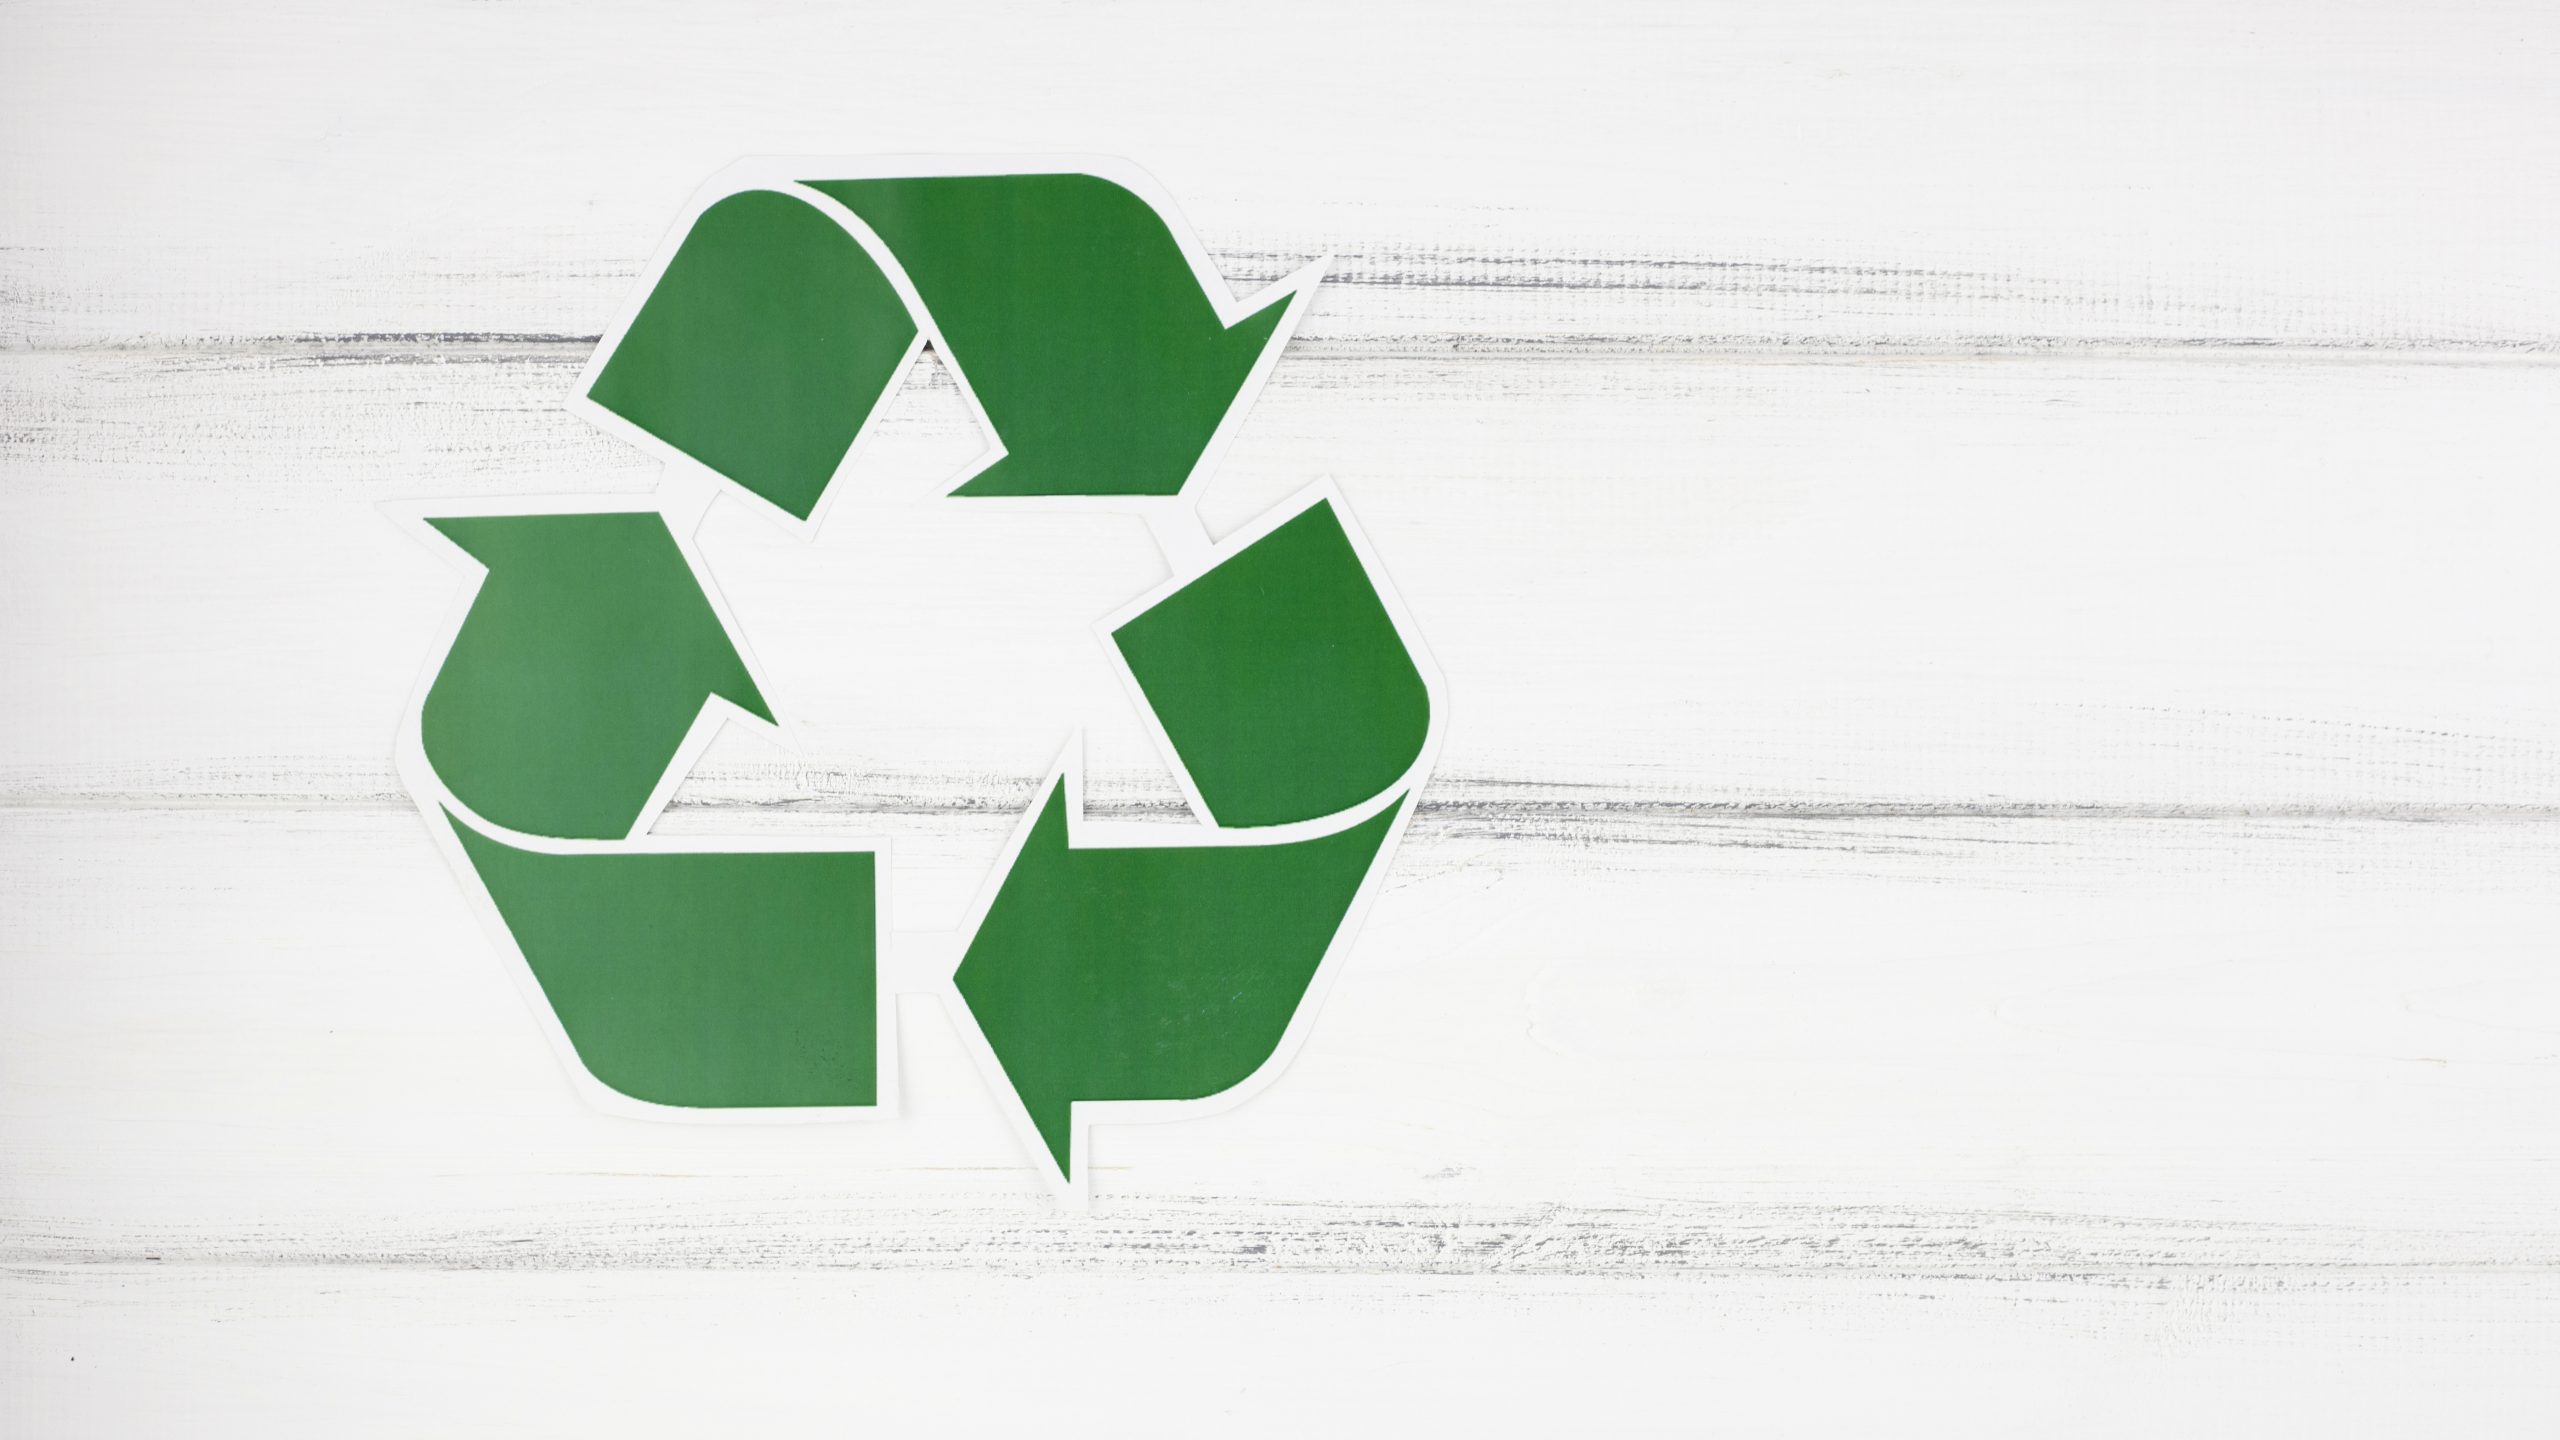 Logo tri sélectif : quel est le symbole du recyclage ?